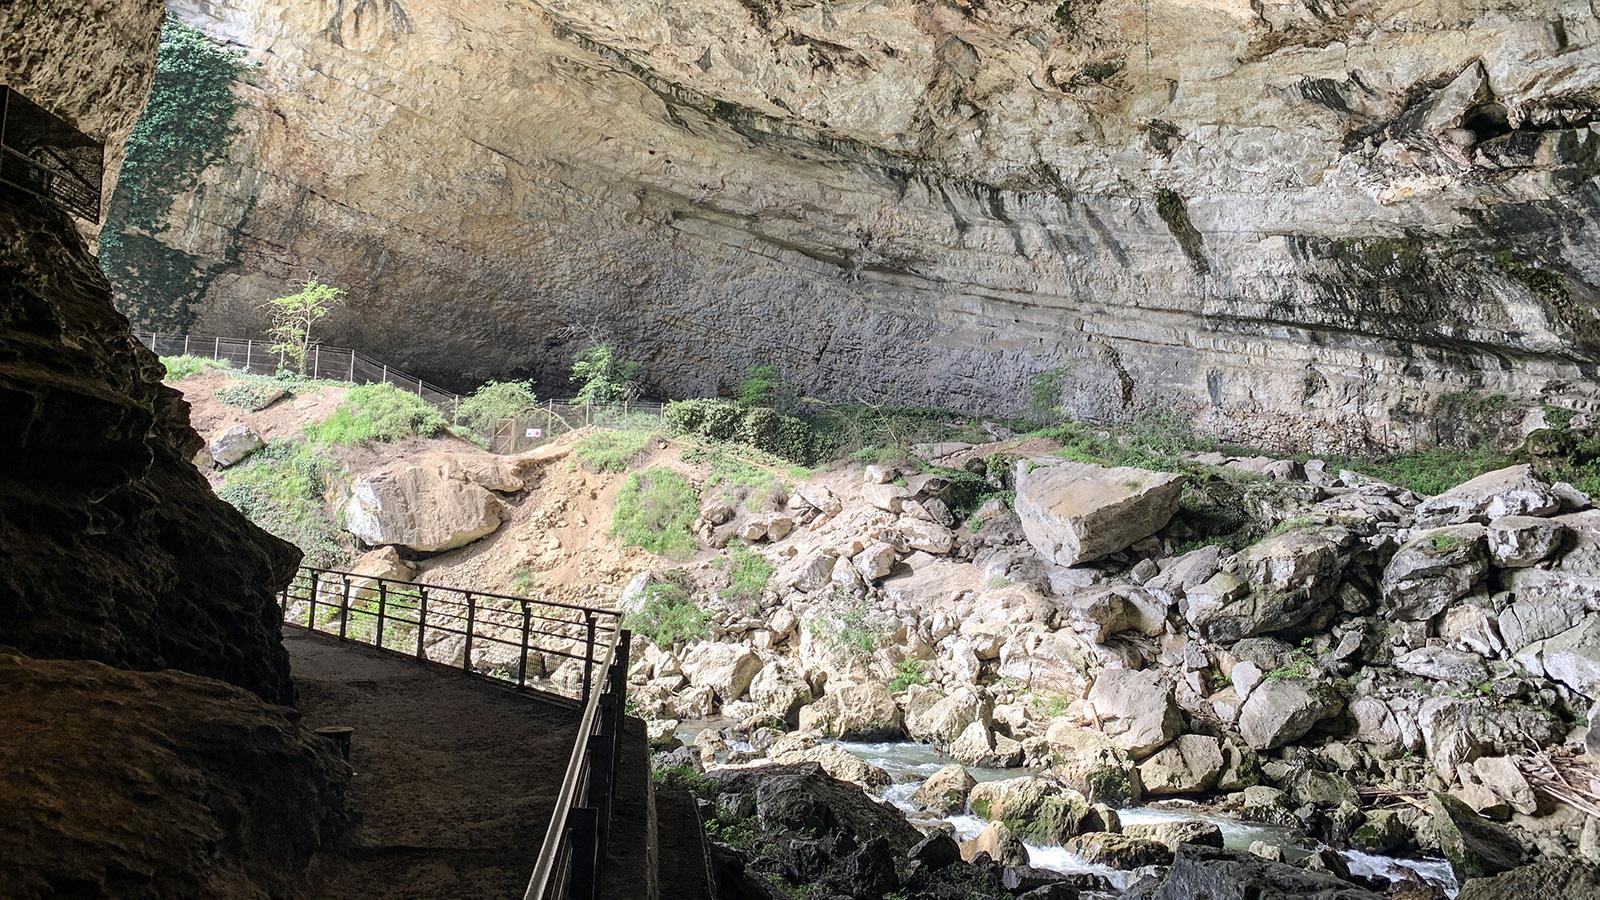 Vom Parktplatz am südlichen Ausgang führt ein Fußweg sicher zum Eingang der Grotte. Foto: Hilke Maunder